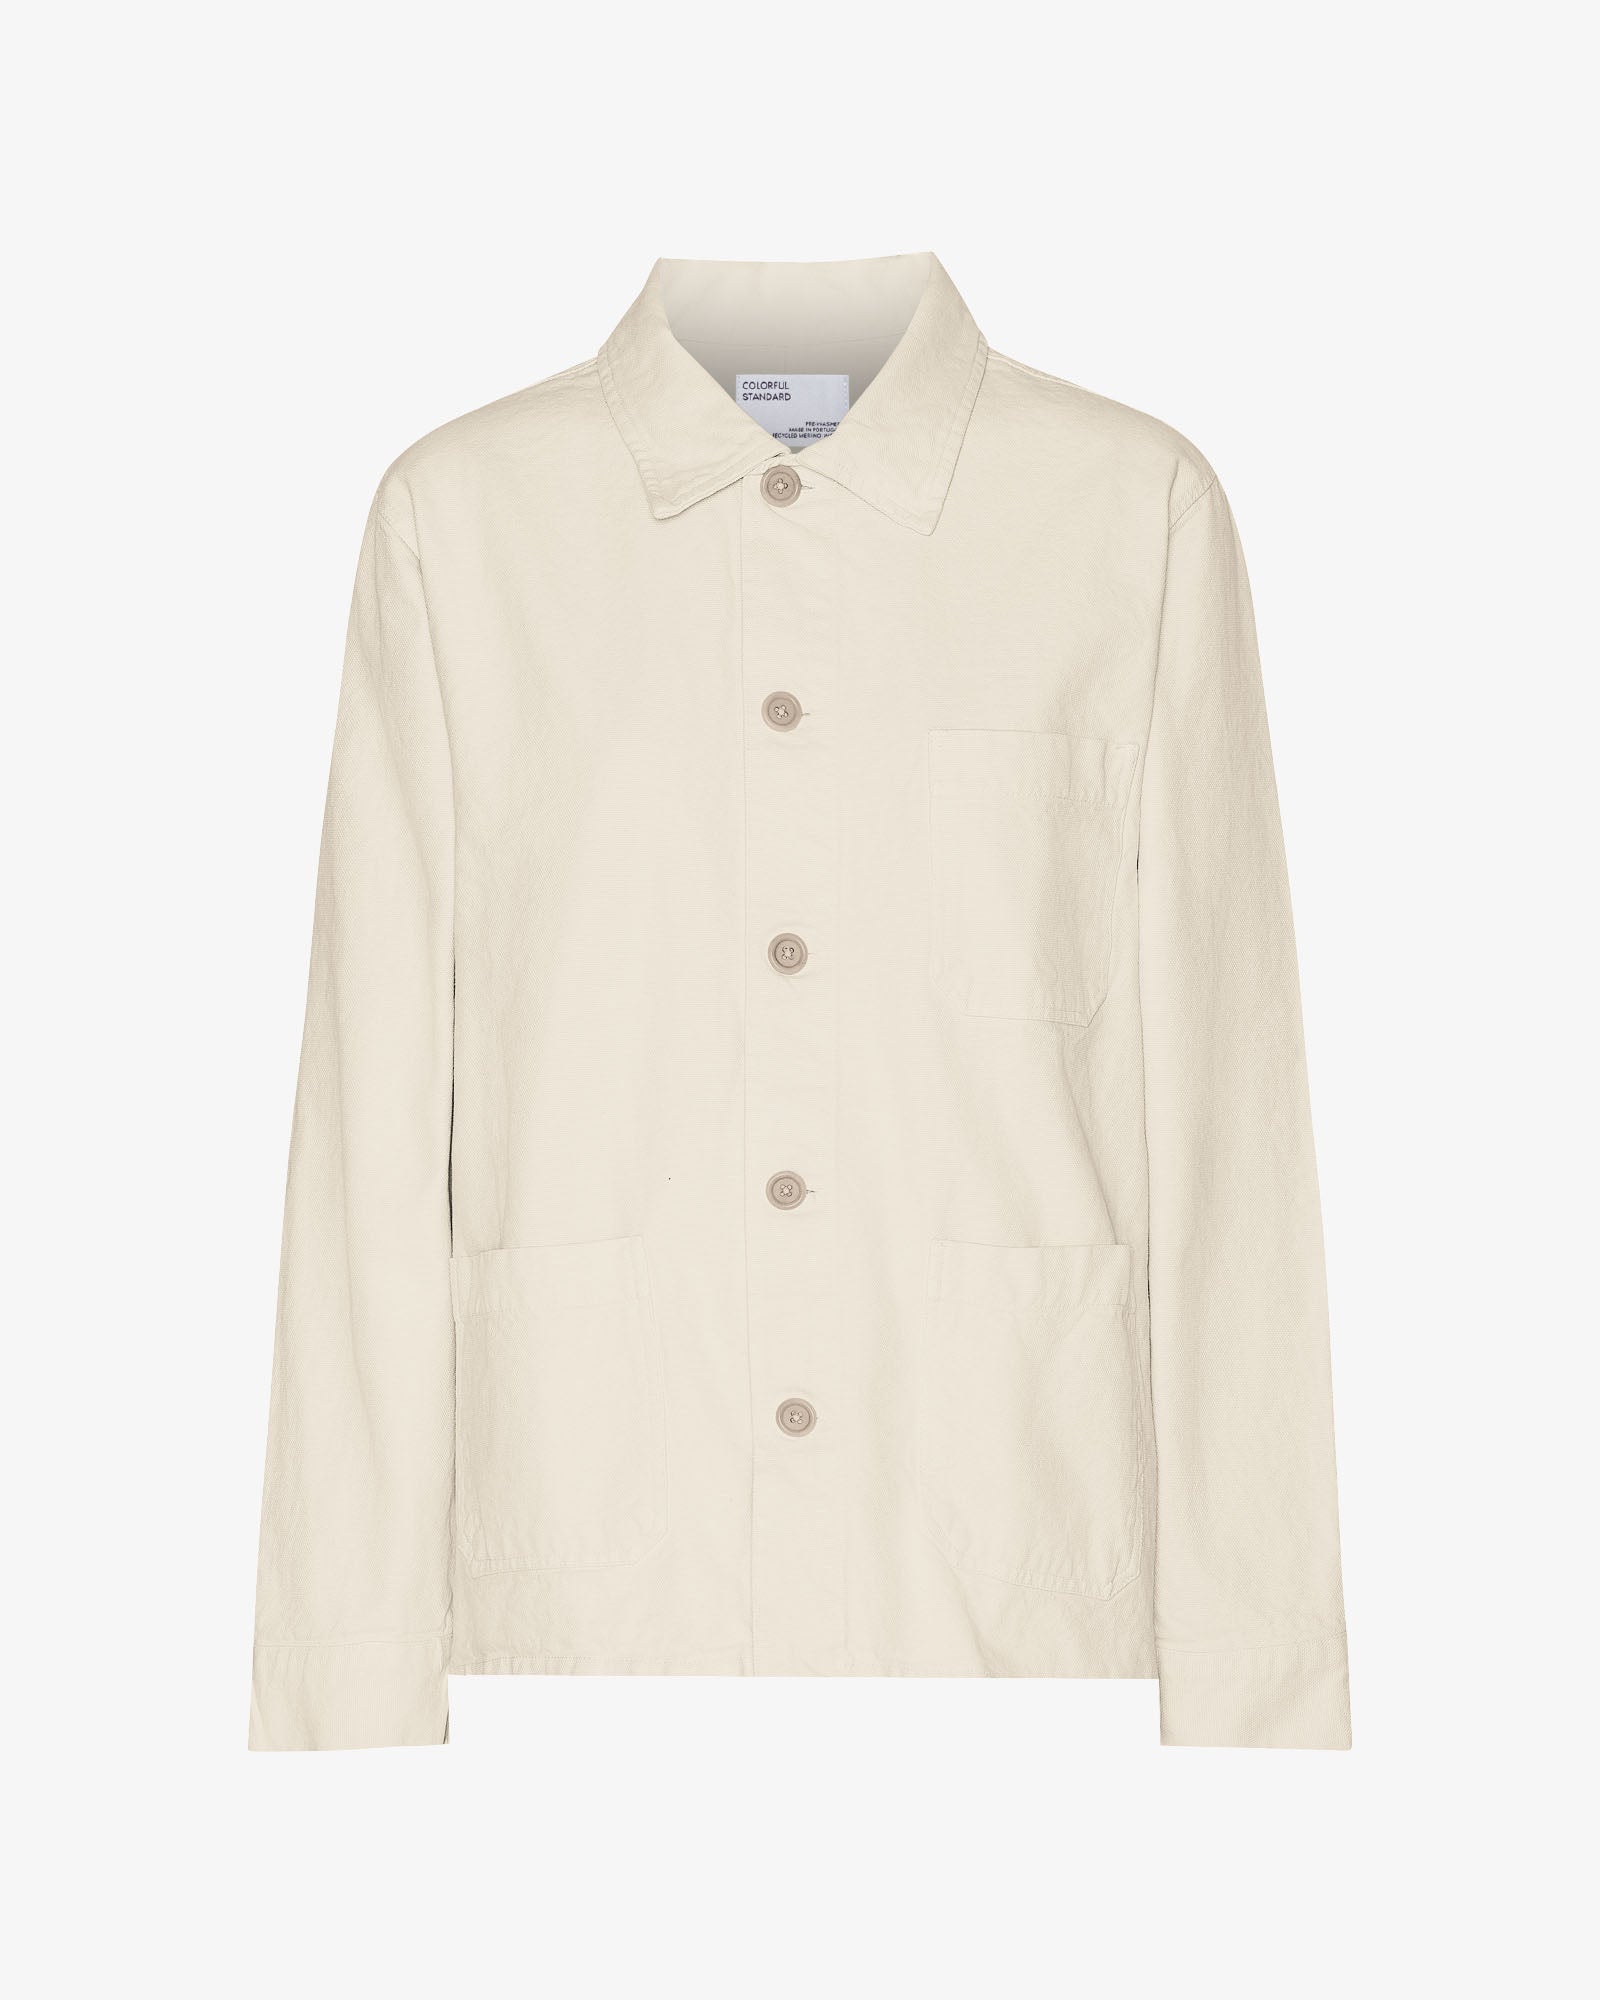 Organic Workwear Jacket - Ivory White